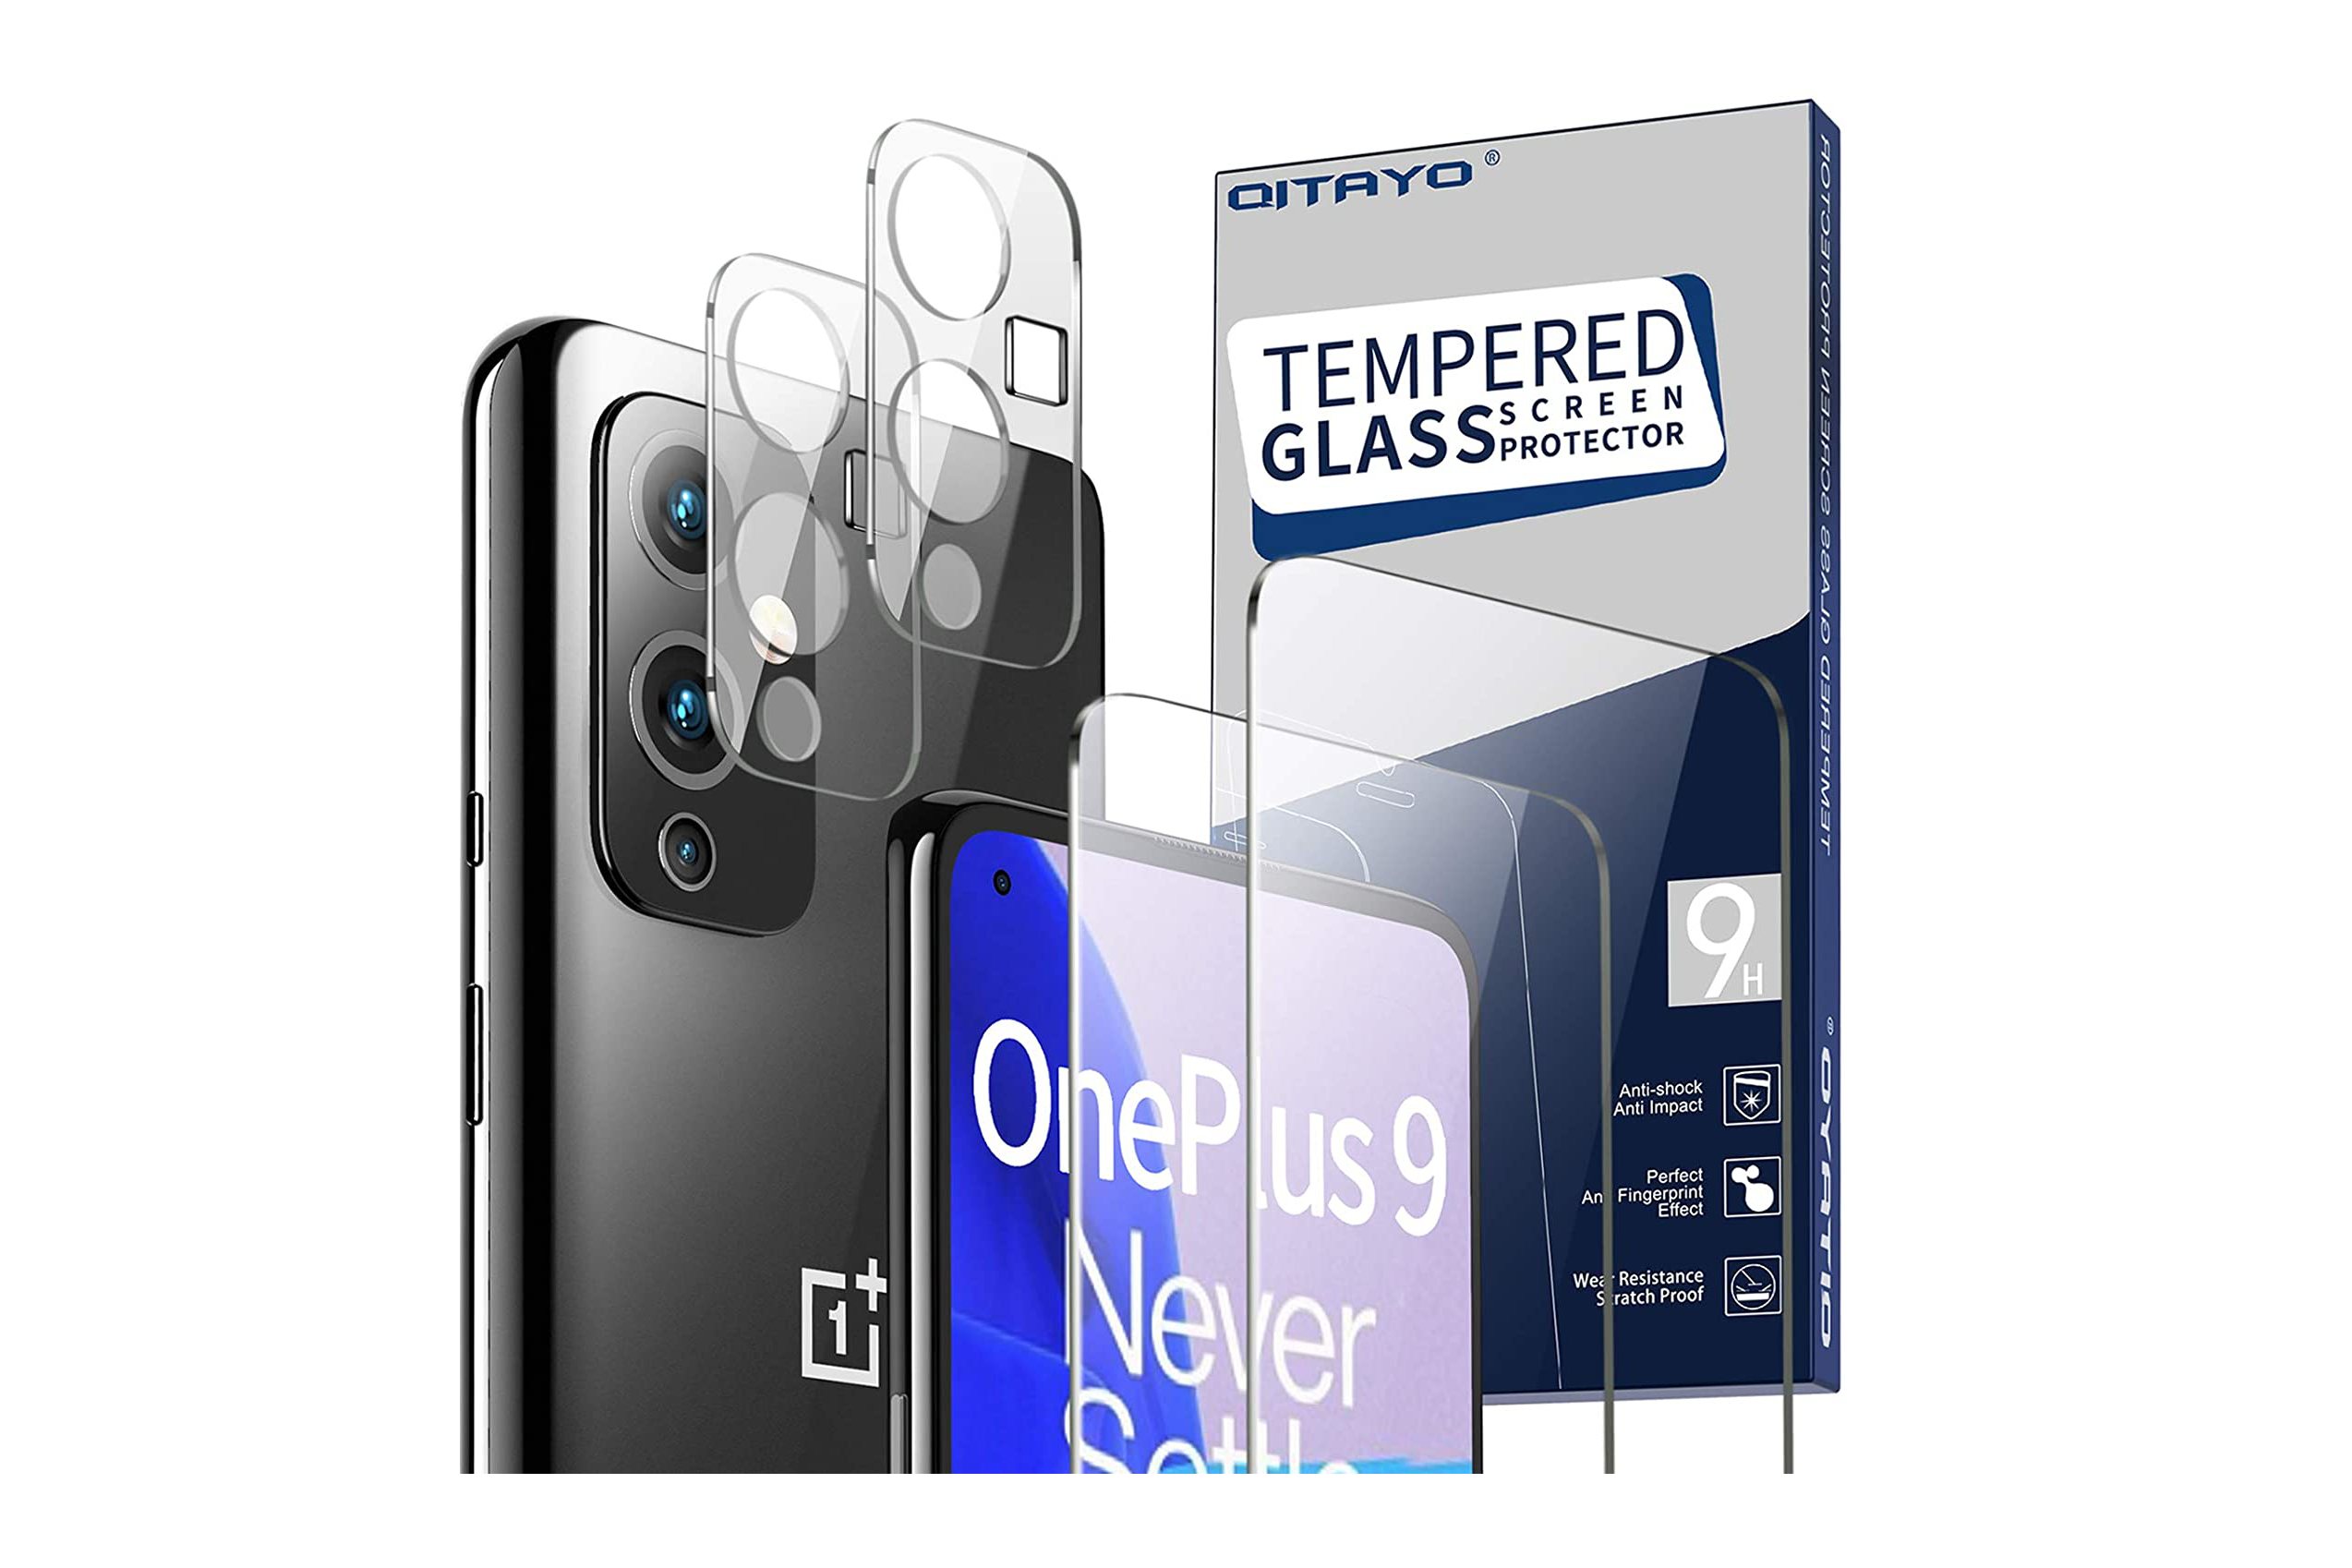 محافظ صفحه نمایش و محافظ دوربین Qitayo برای OnePlus 9